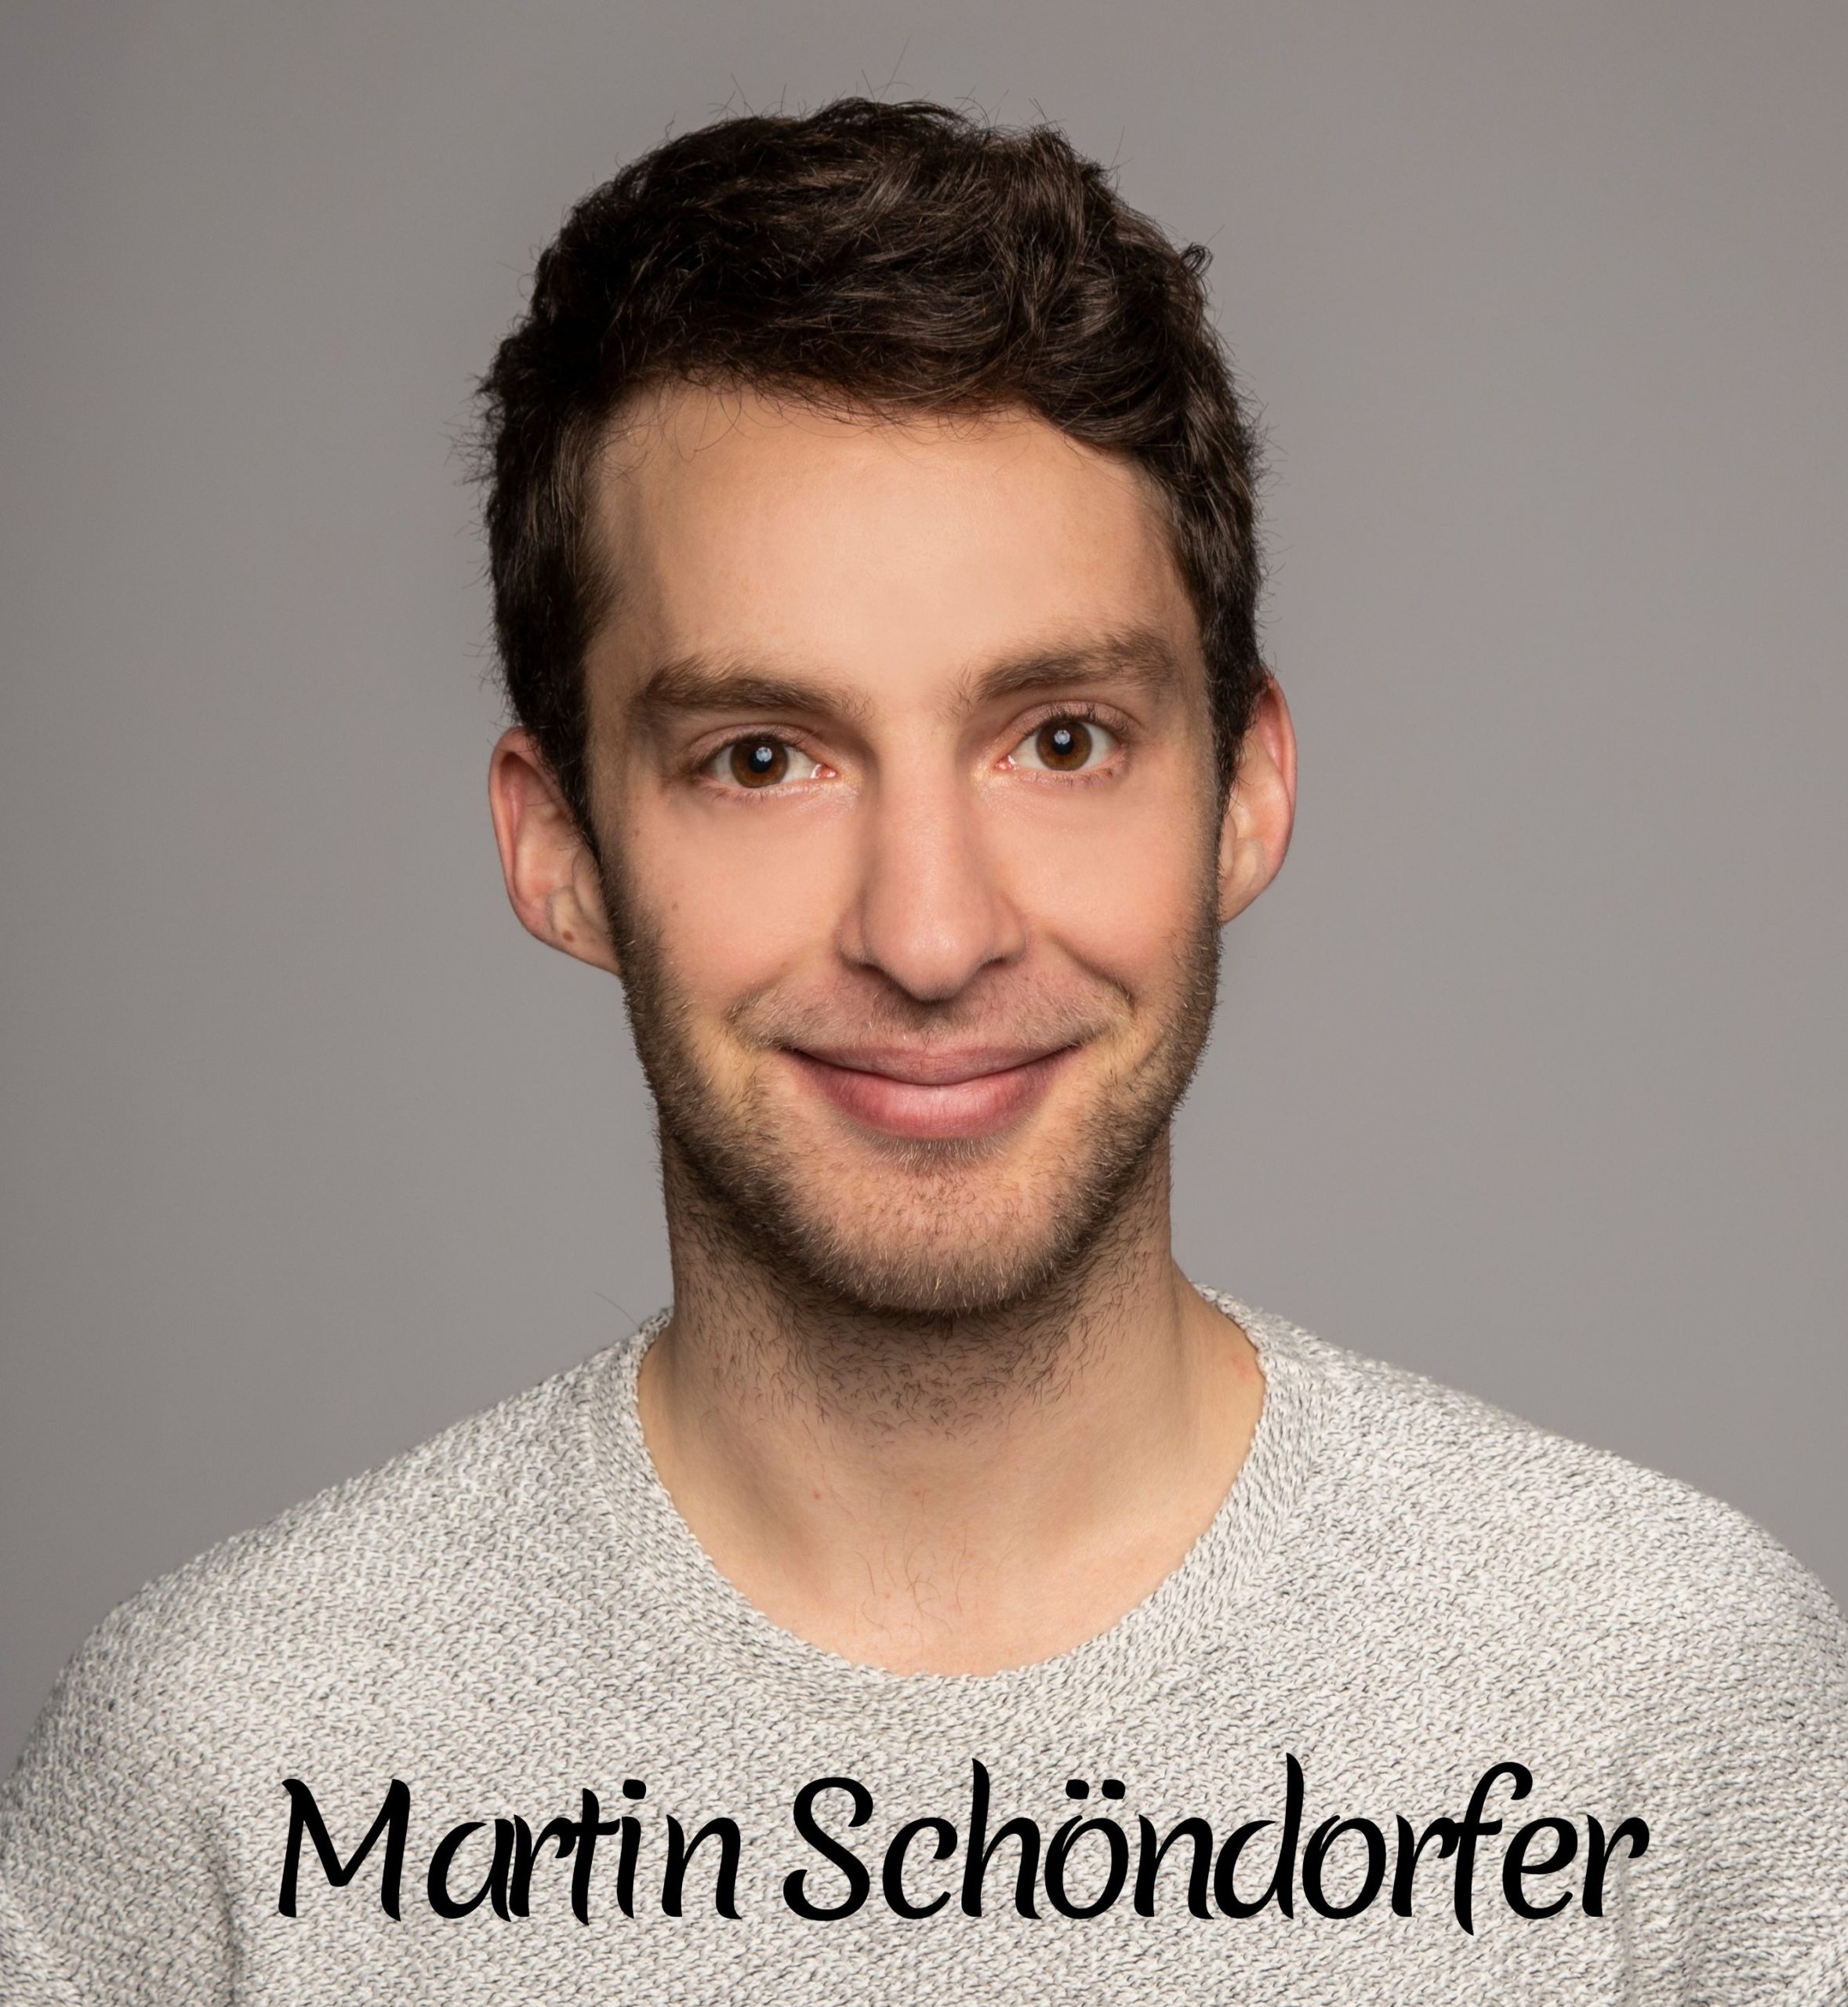 Martin Schöndorfer